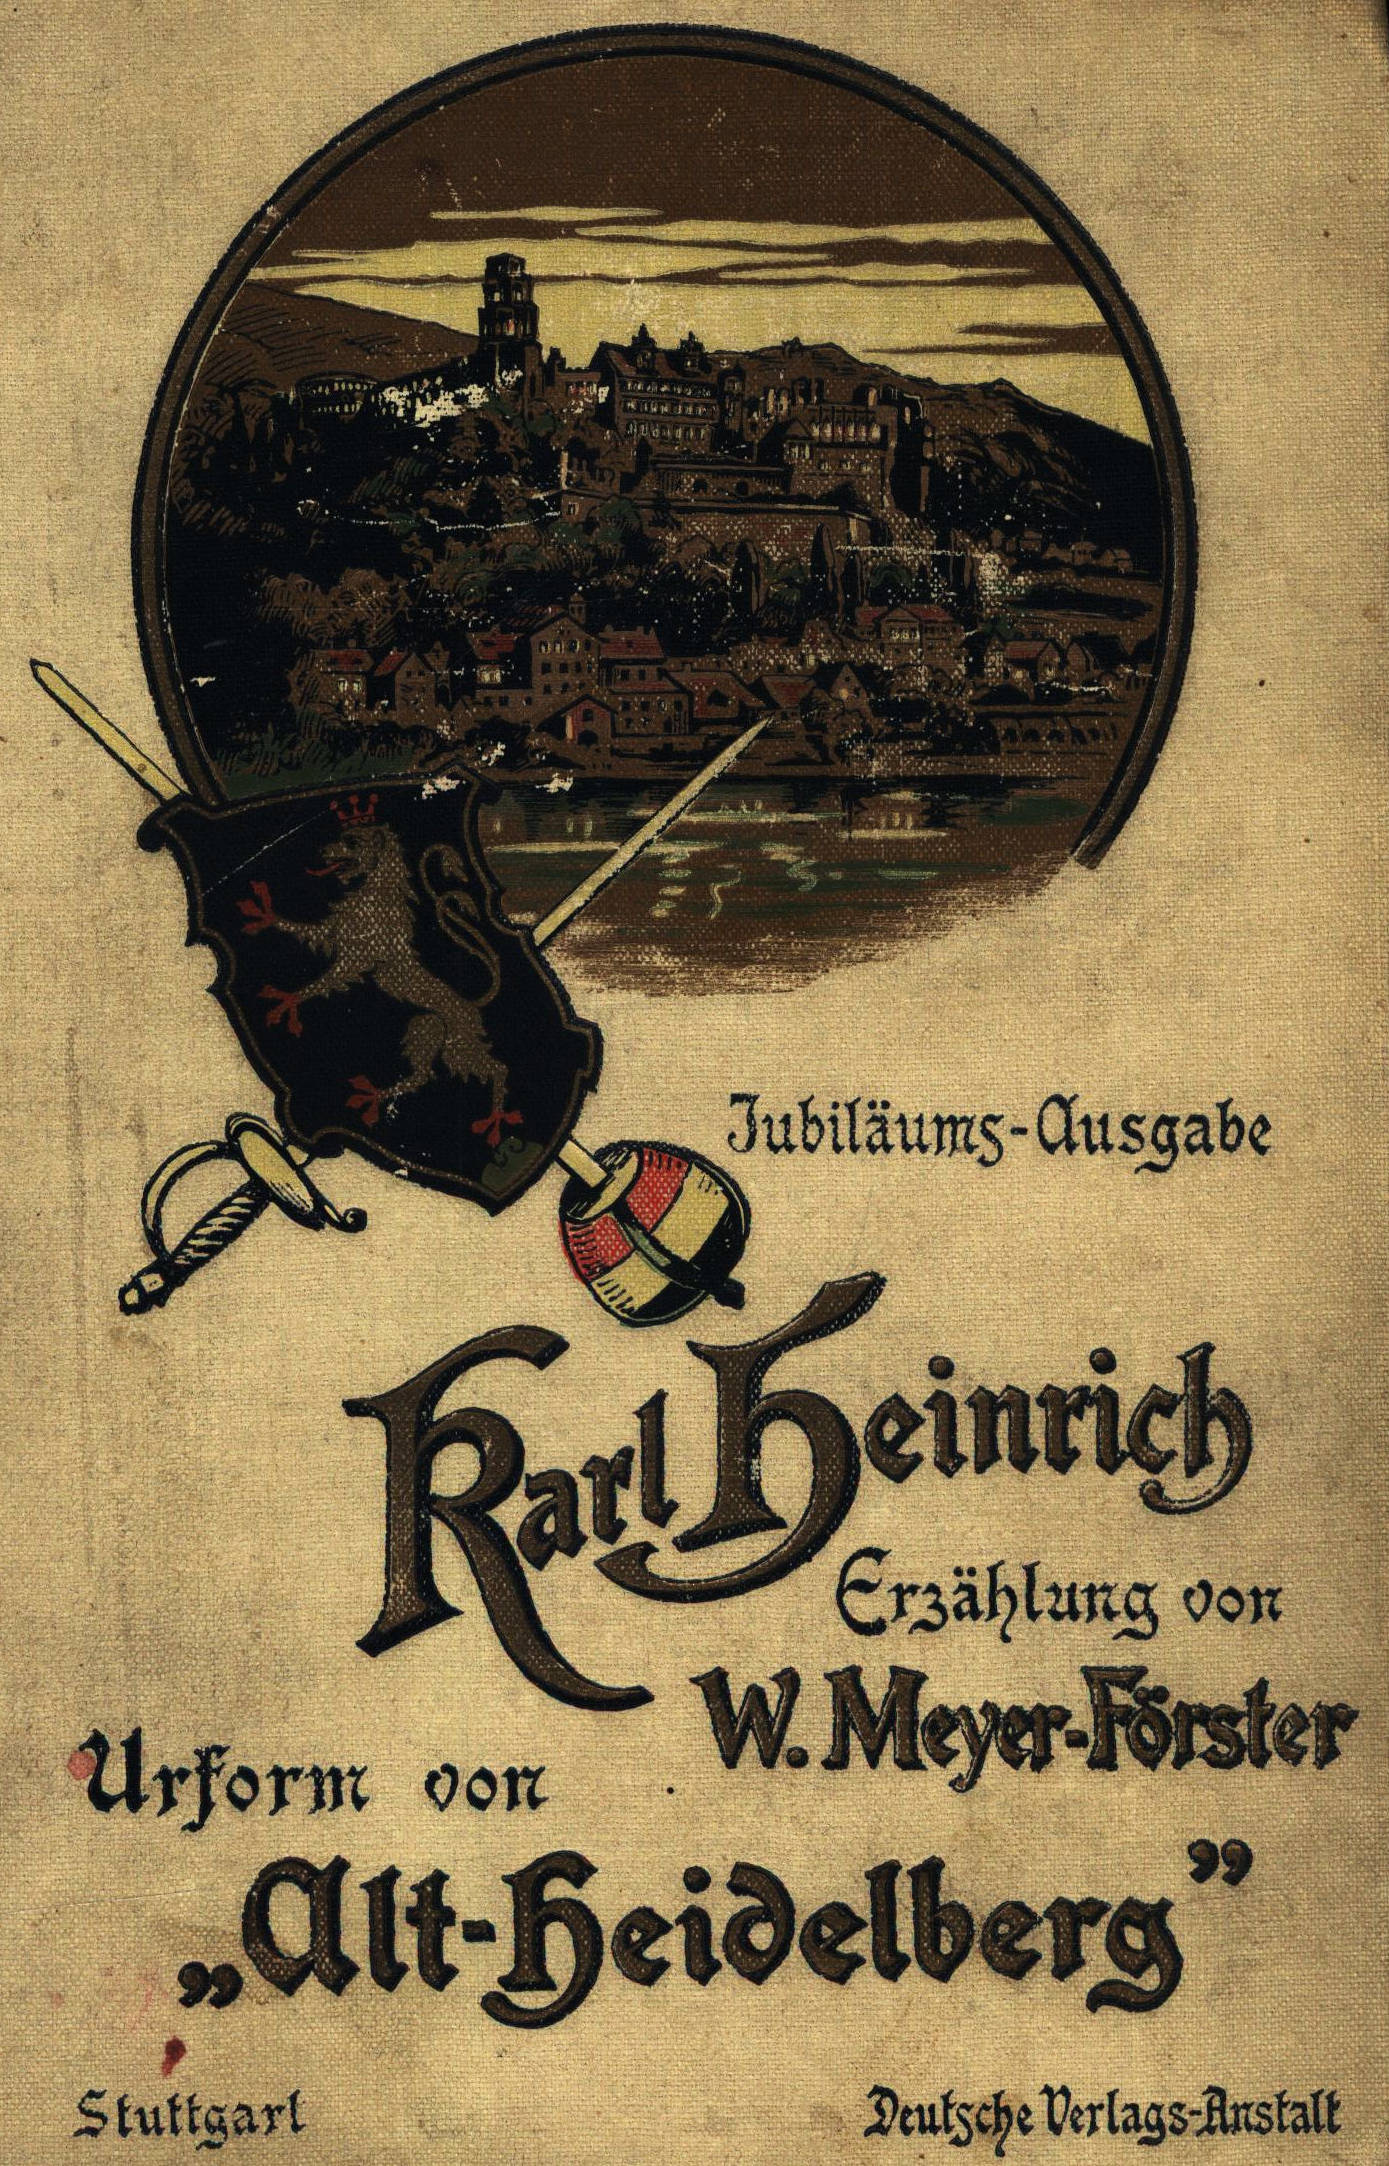 Karl Heinrich, by Wilhelm Meyer-Förster—A Project Gutenberg eBook